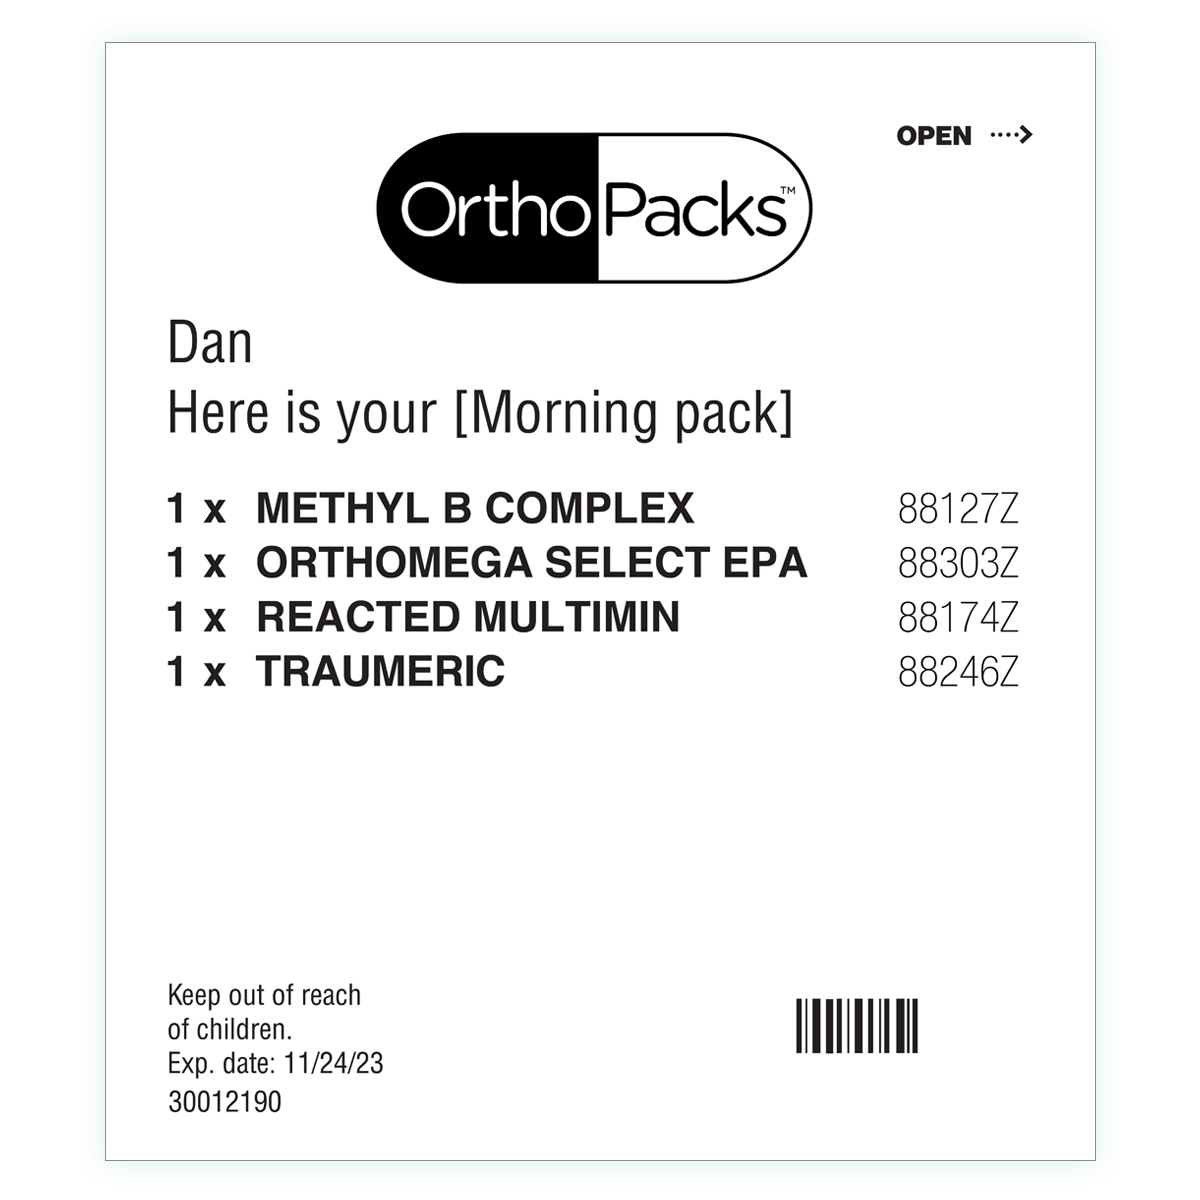 OrthoPacks Pack photo image